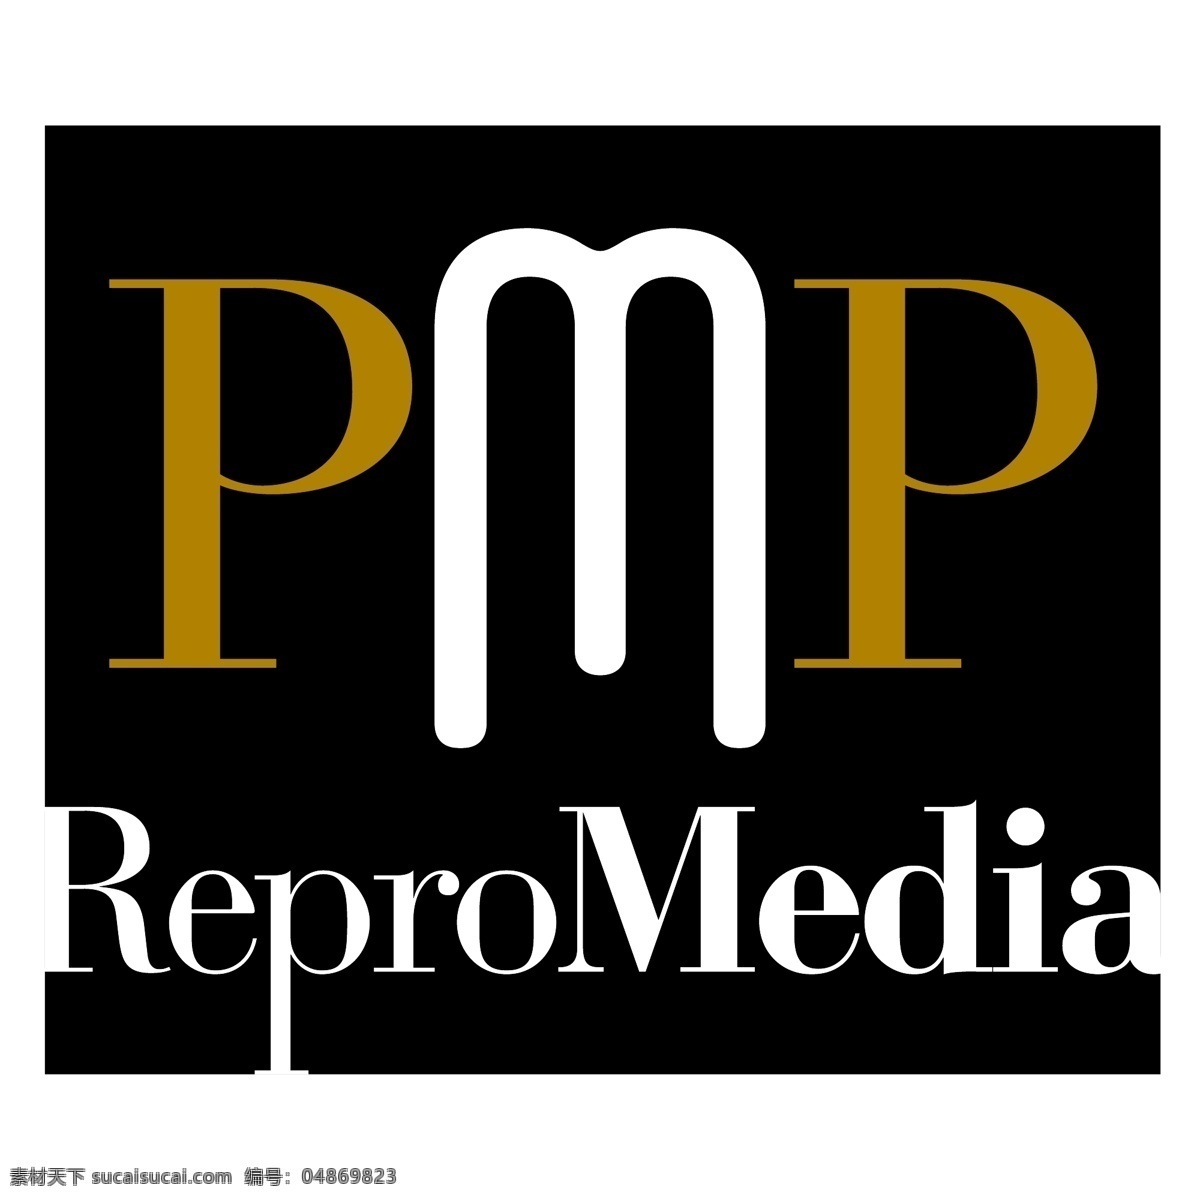 pmp 复制 媒体 标识 公司 免费 品牌 品牌标识 商标 矢量标志下载 免费矢量标识 矢量 psd源文件 logo设计